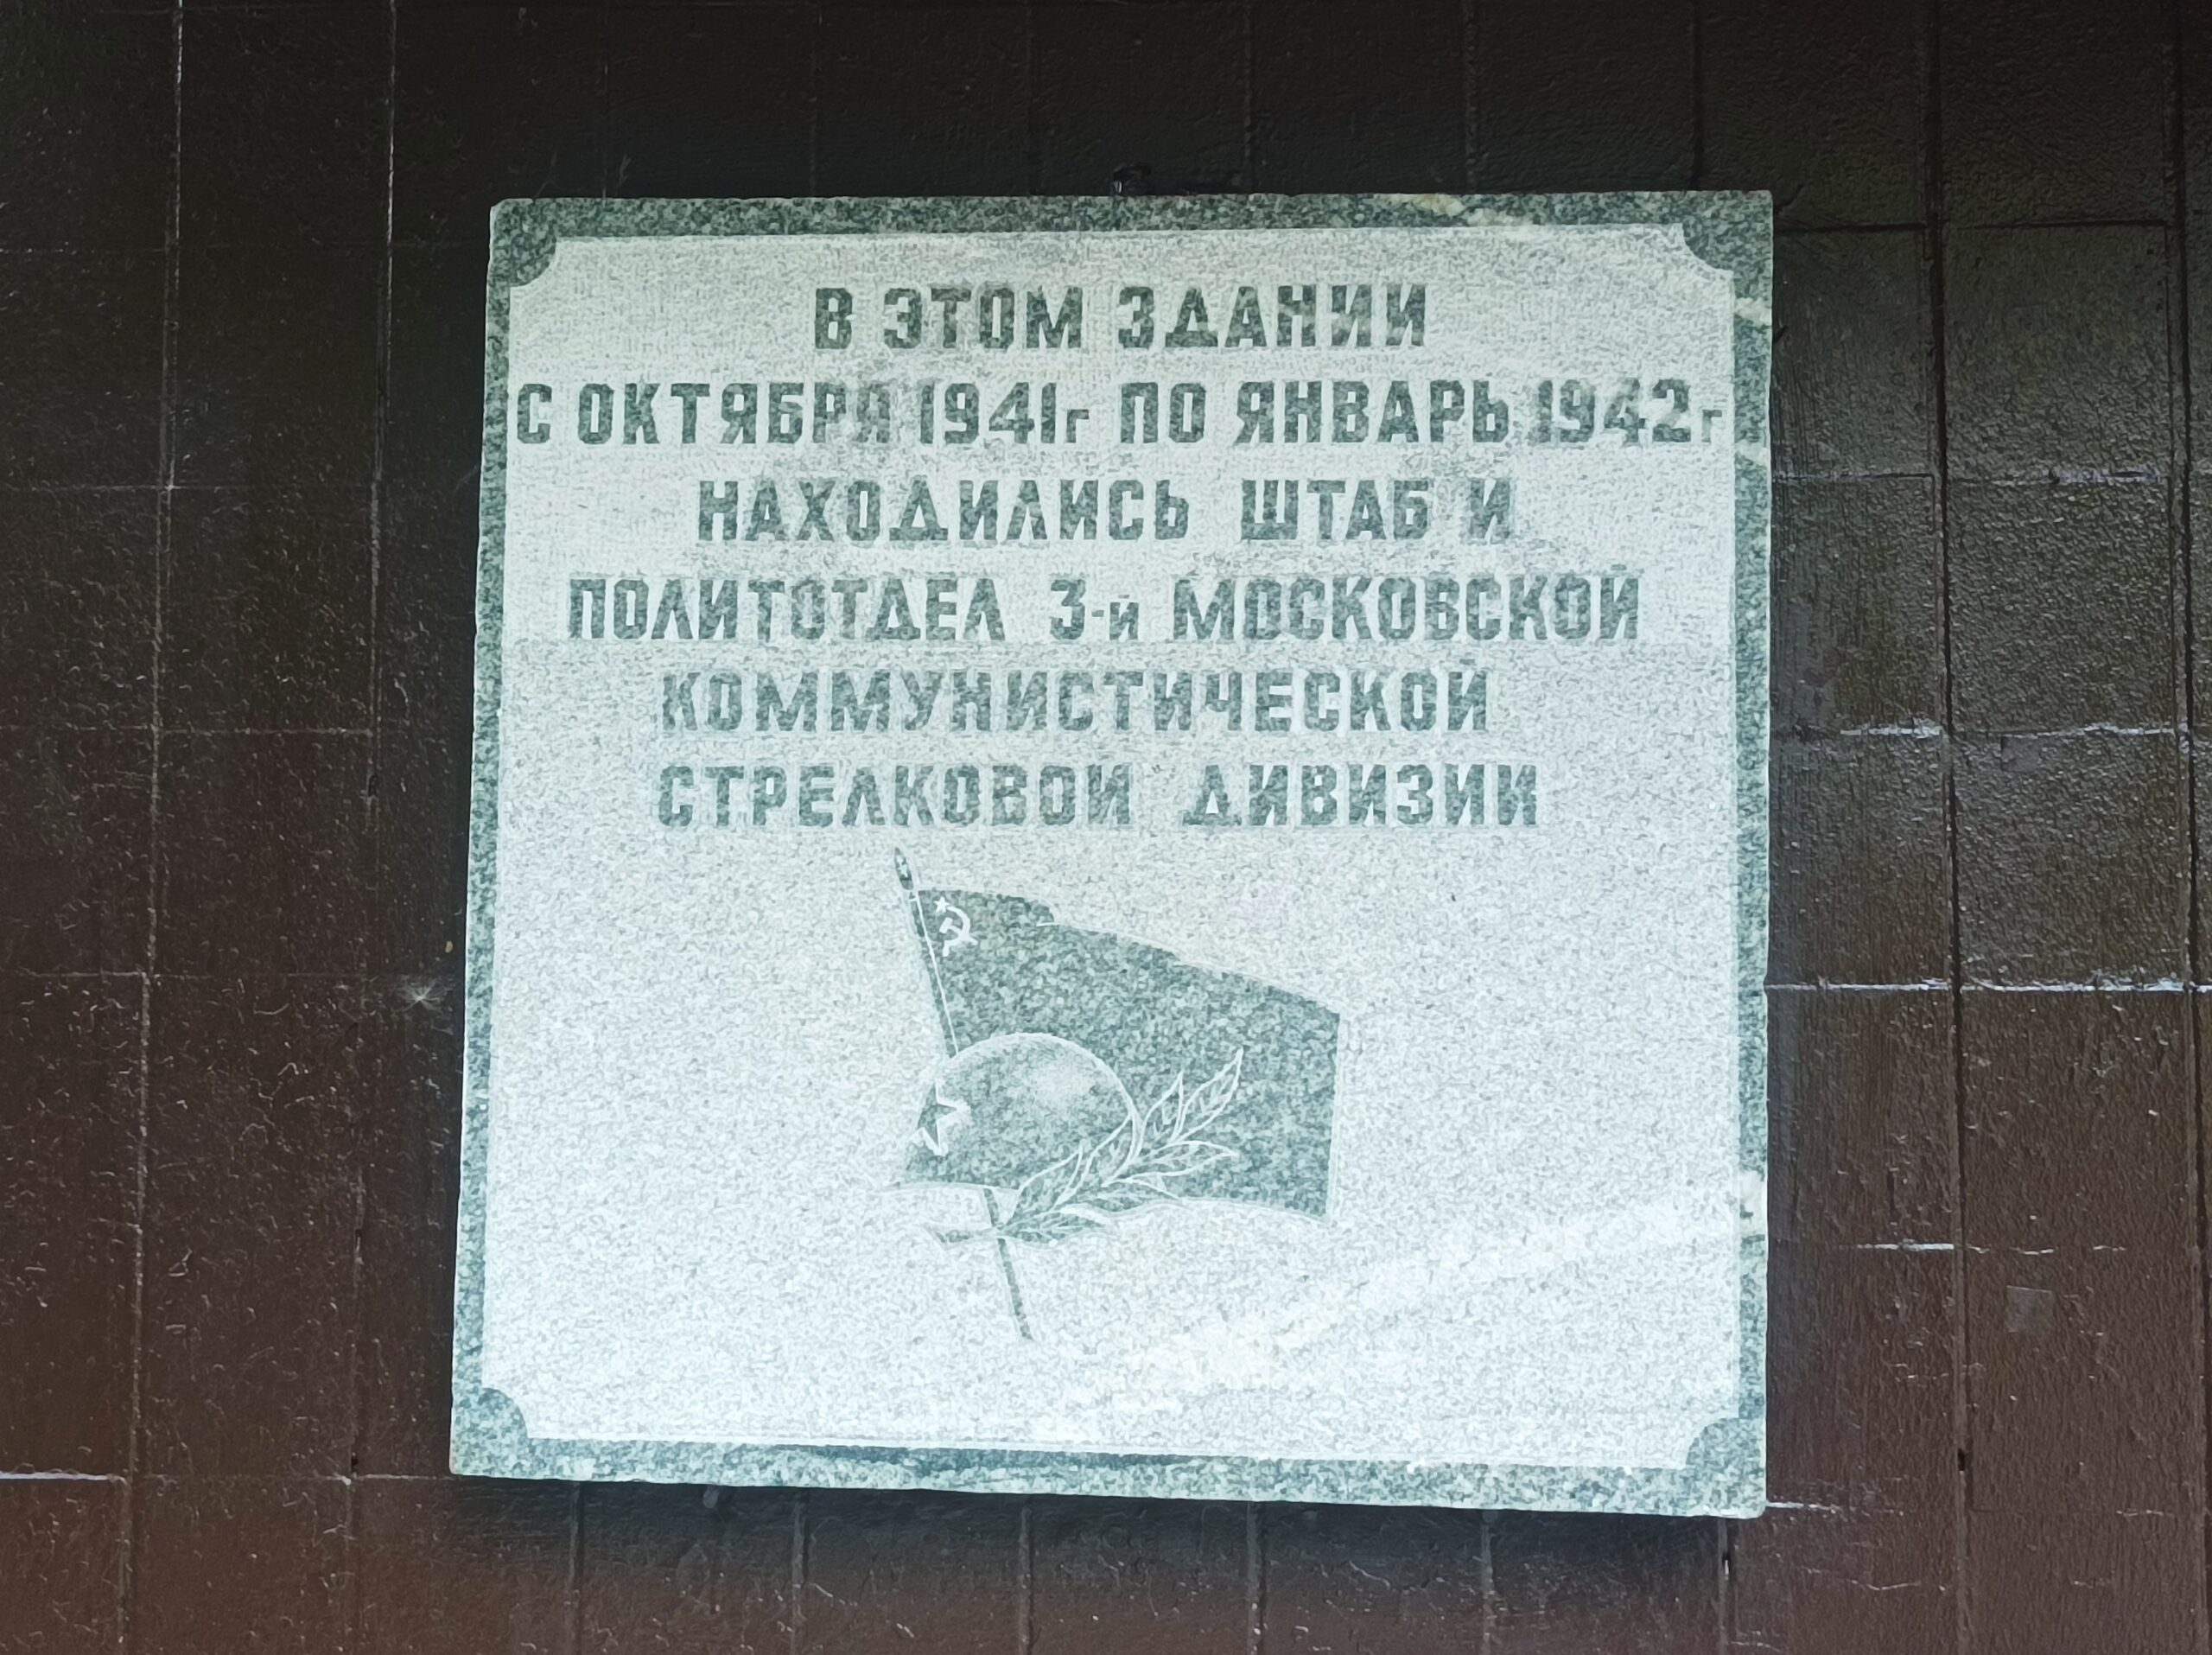 Здание, в котором в 1941-1942 гг. находился штаб и политотдел 3-й Московской коммунистической стрелковой дивизии